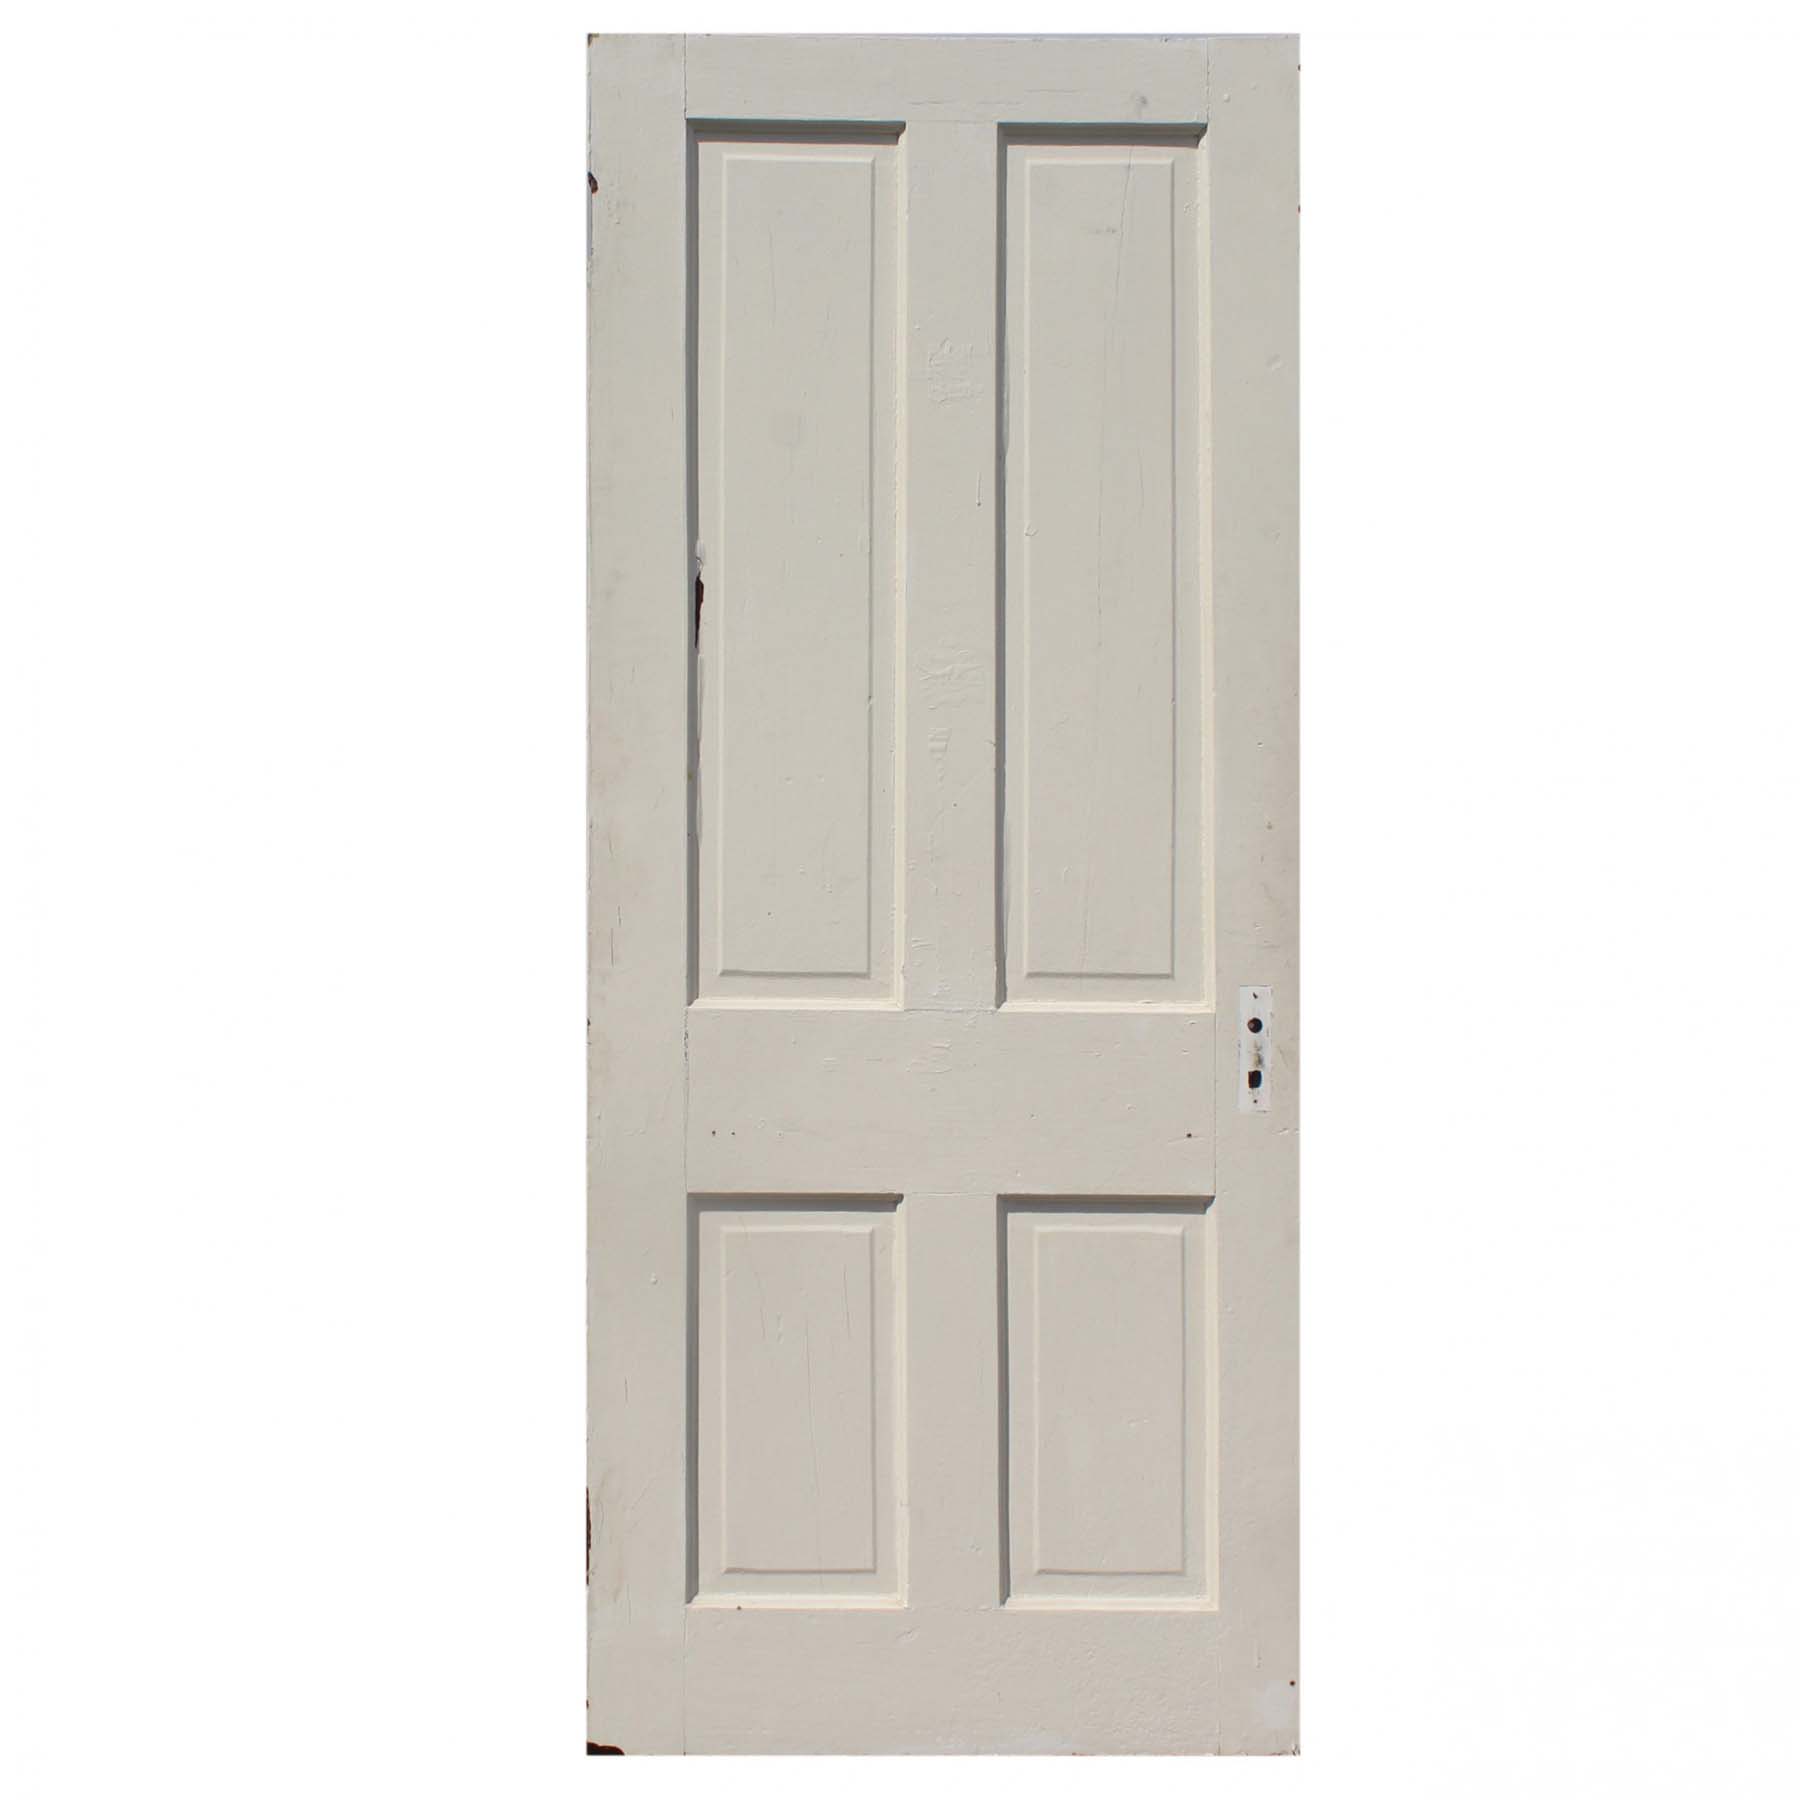 SOLD Reclaimed 32” Four-Panel Solid Wood Door-72315